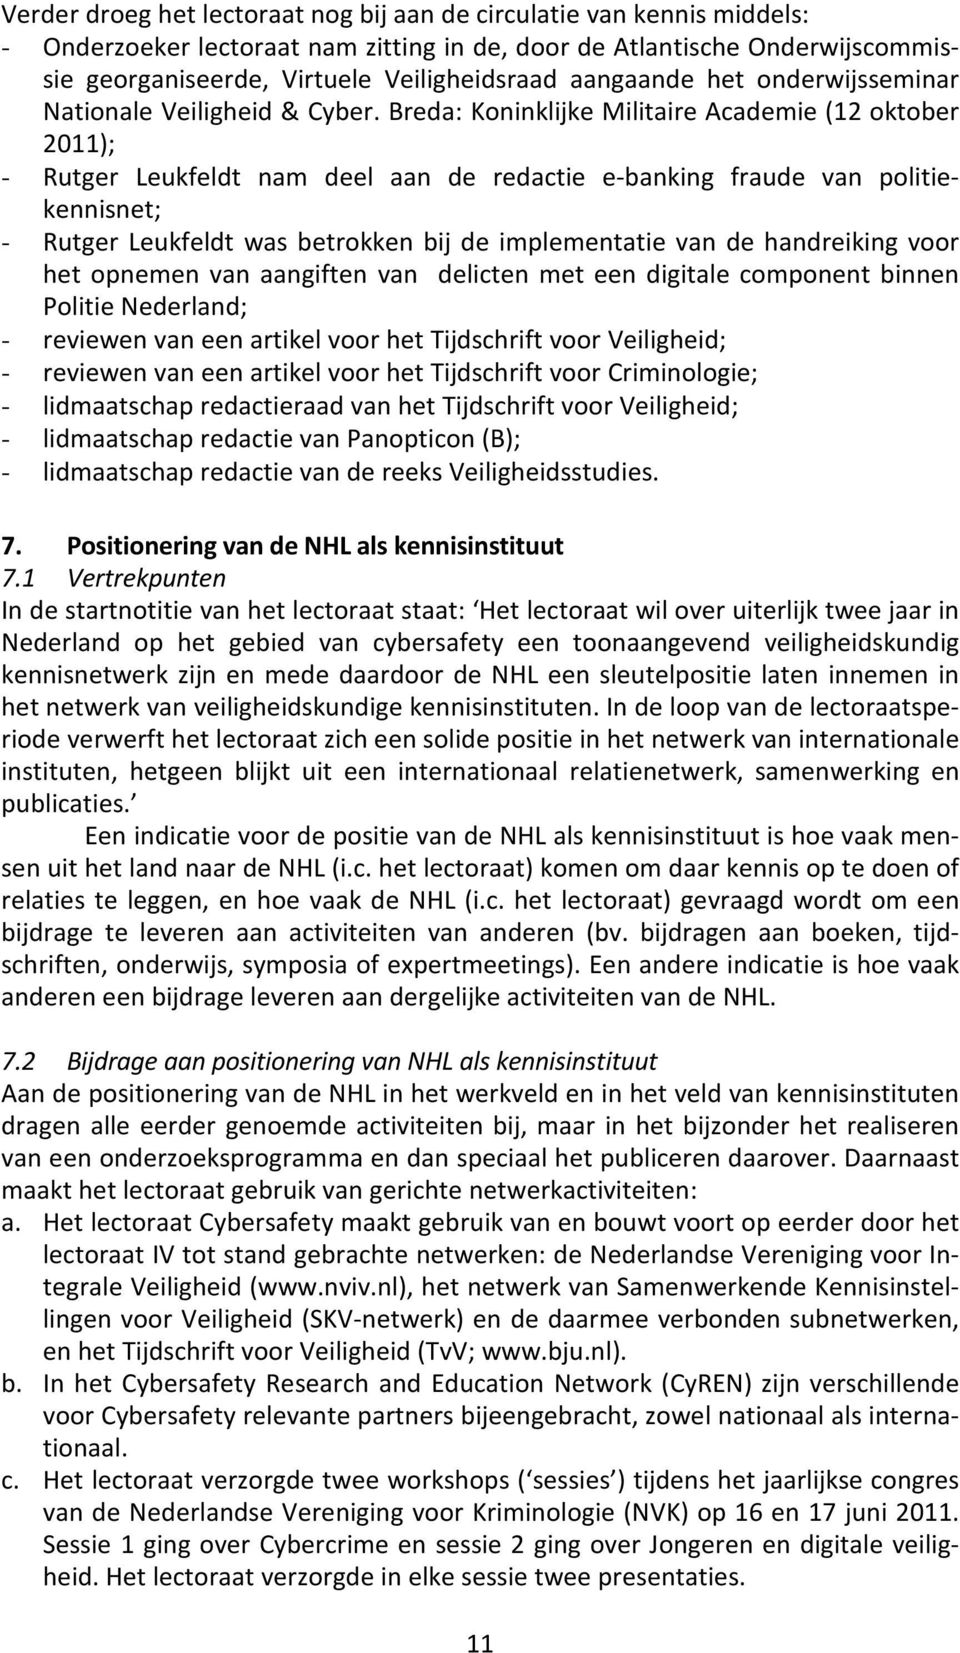 Breda: Koninklijke Militaire Academie (12 oktober 2011); - Rutger Leukfeldt nam deel aan de redactie e-banking fraude van politiekennisnet; - Rutger Leukfeldt was betrokken bij de implementatie van